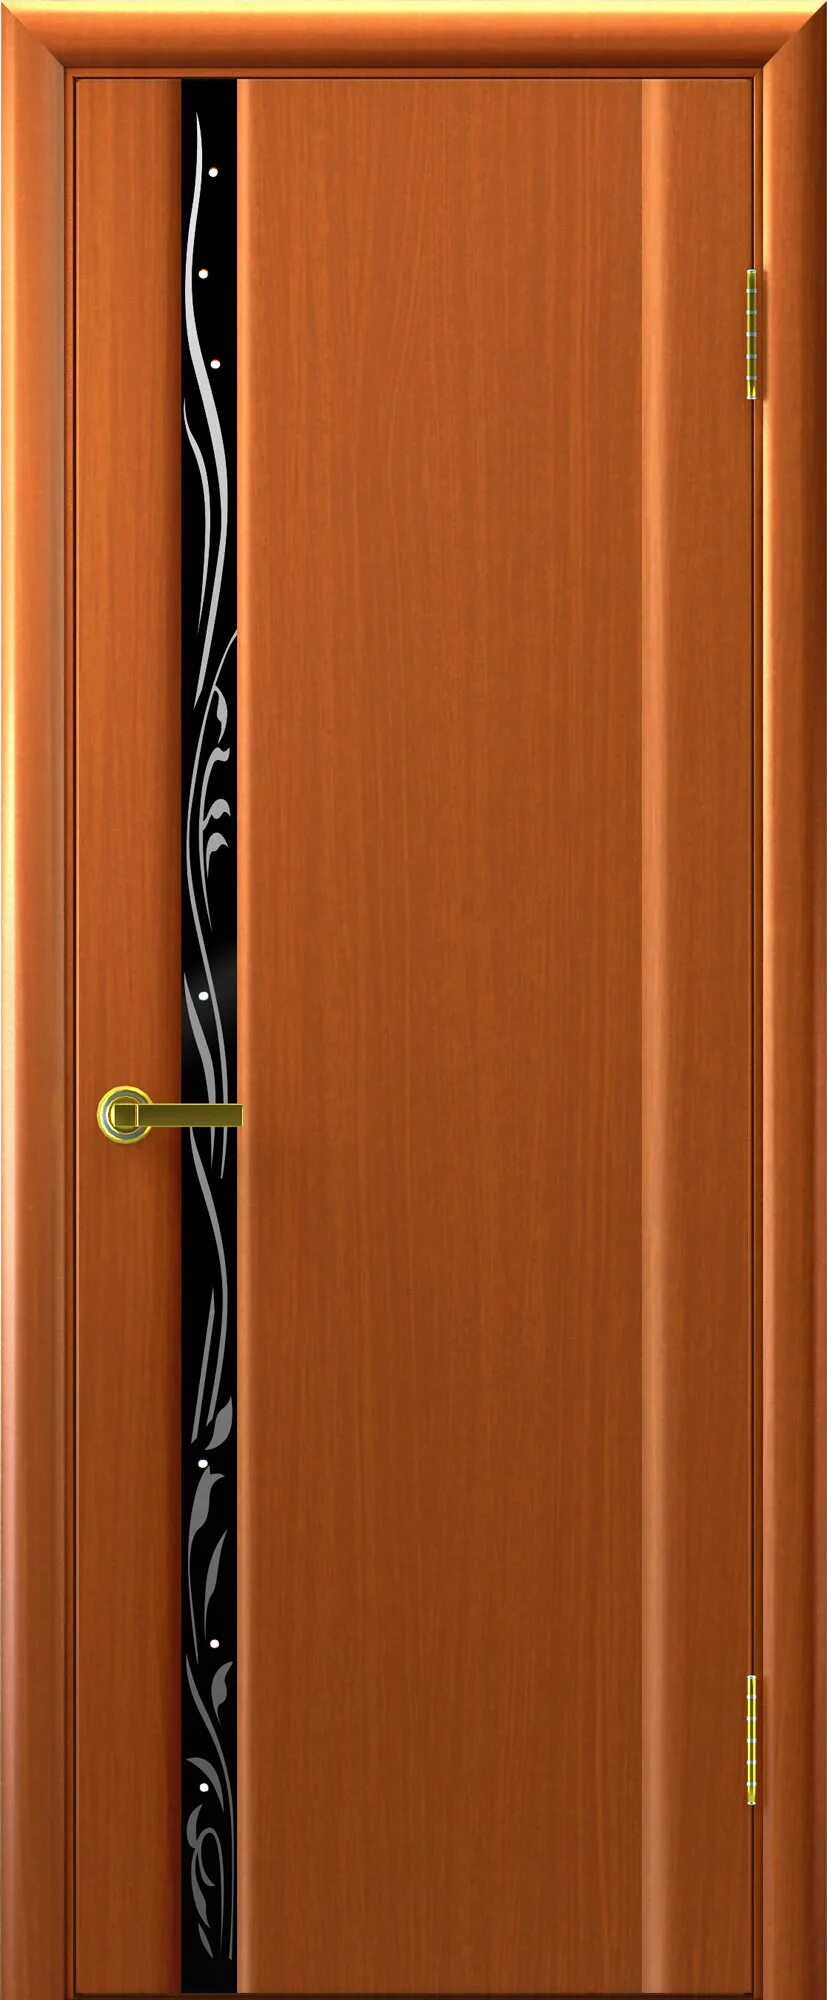 Ульяновские двери Синай 1. Межкомнатная дверь Синай 1. Двери анегри. Модель Парма 1 межкомнатная дверь. Дверь 550 купить